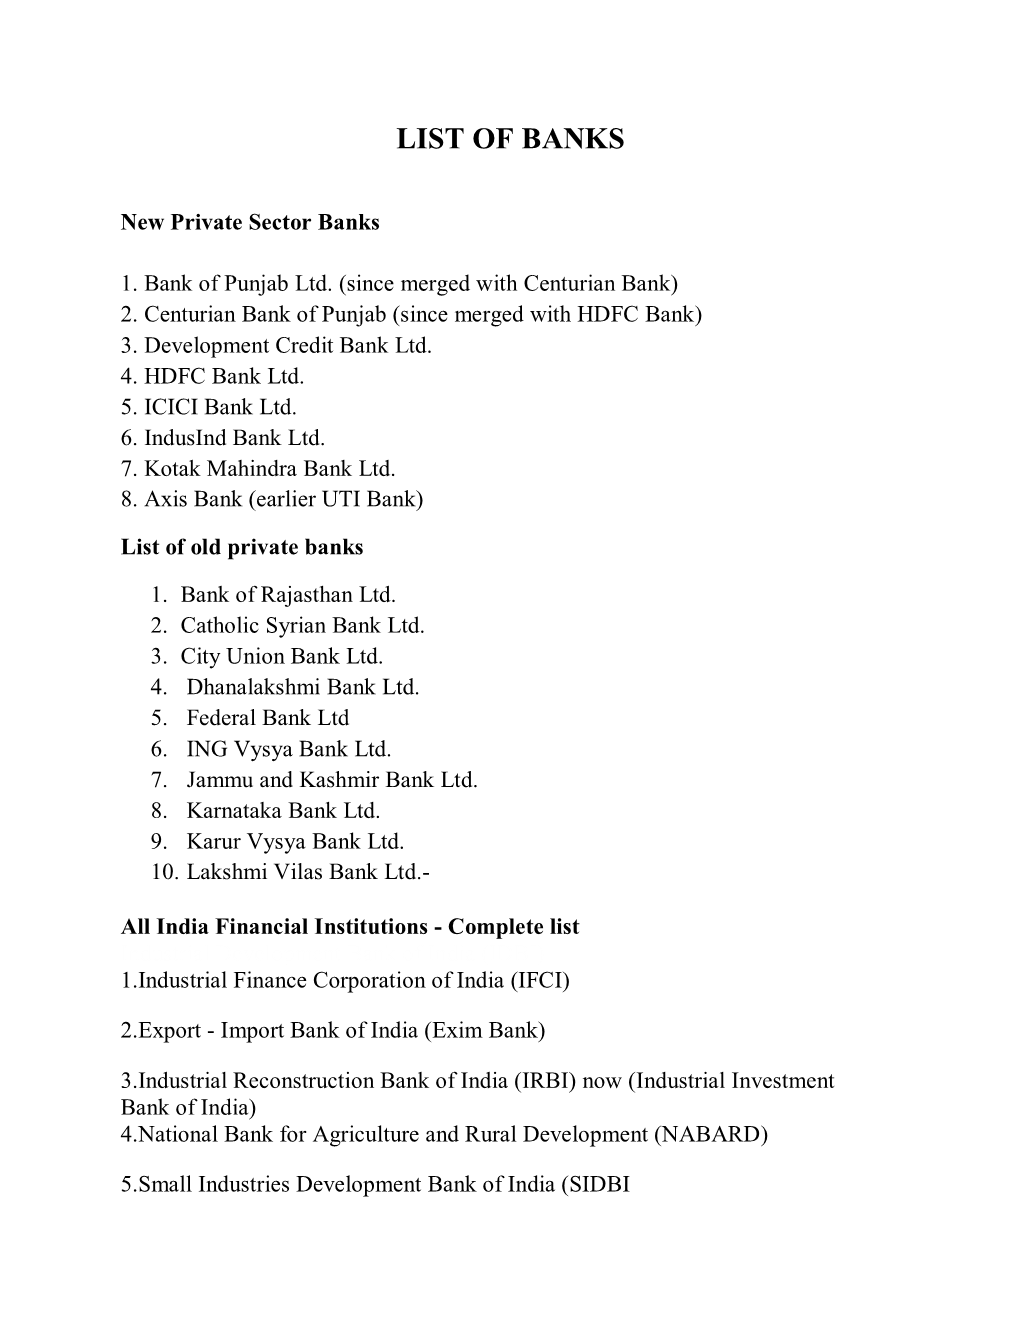 List of Banks